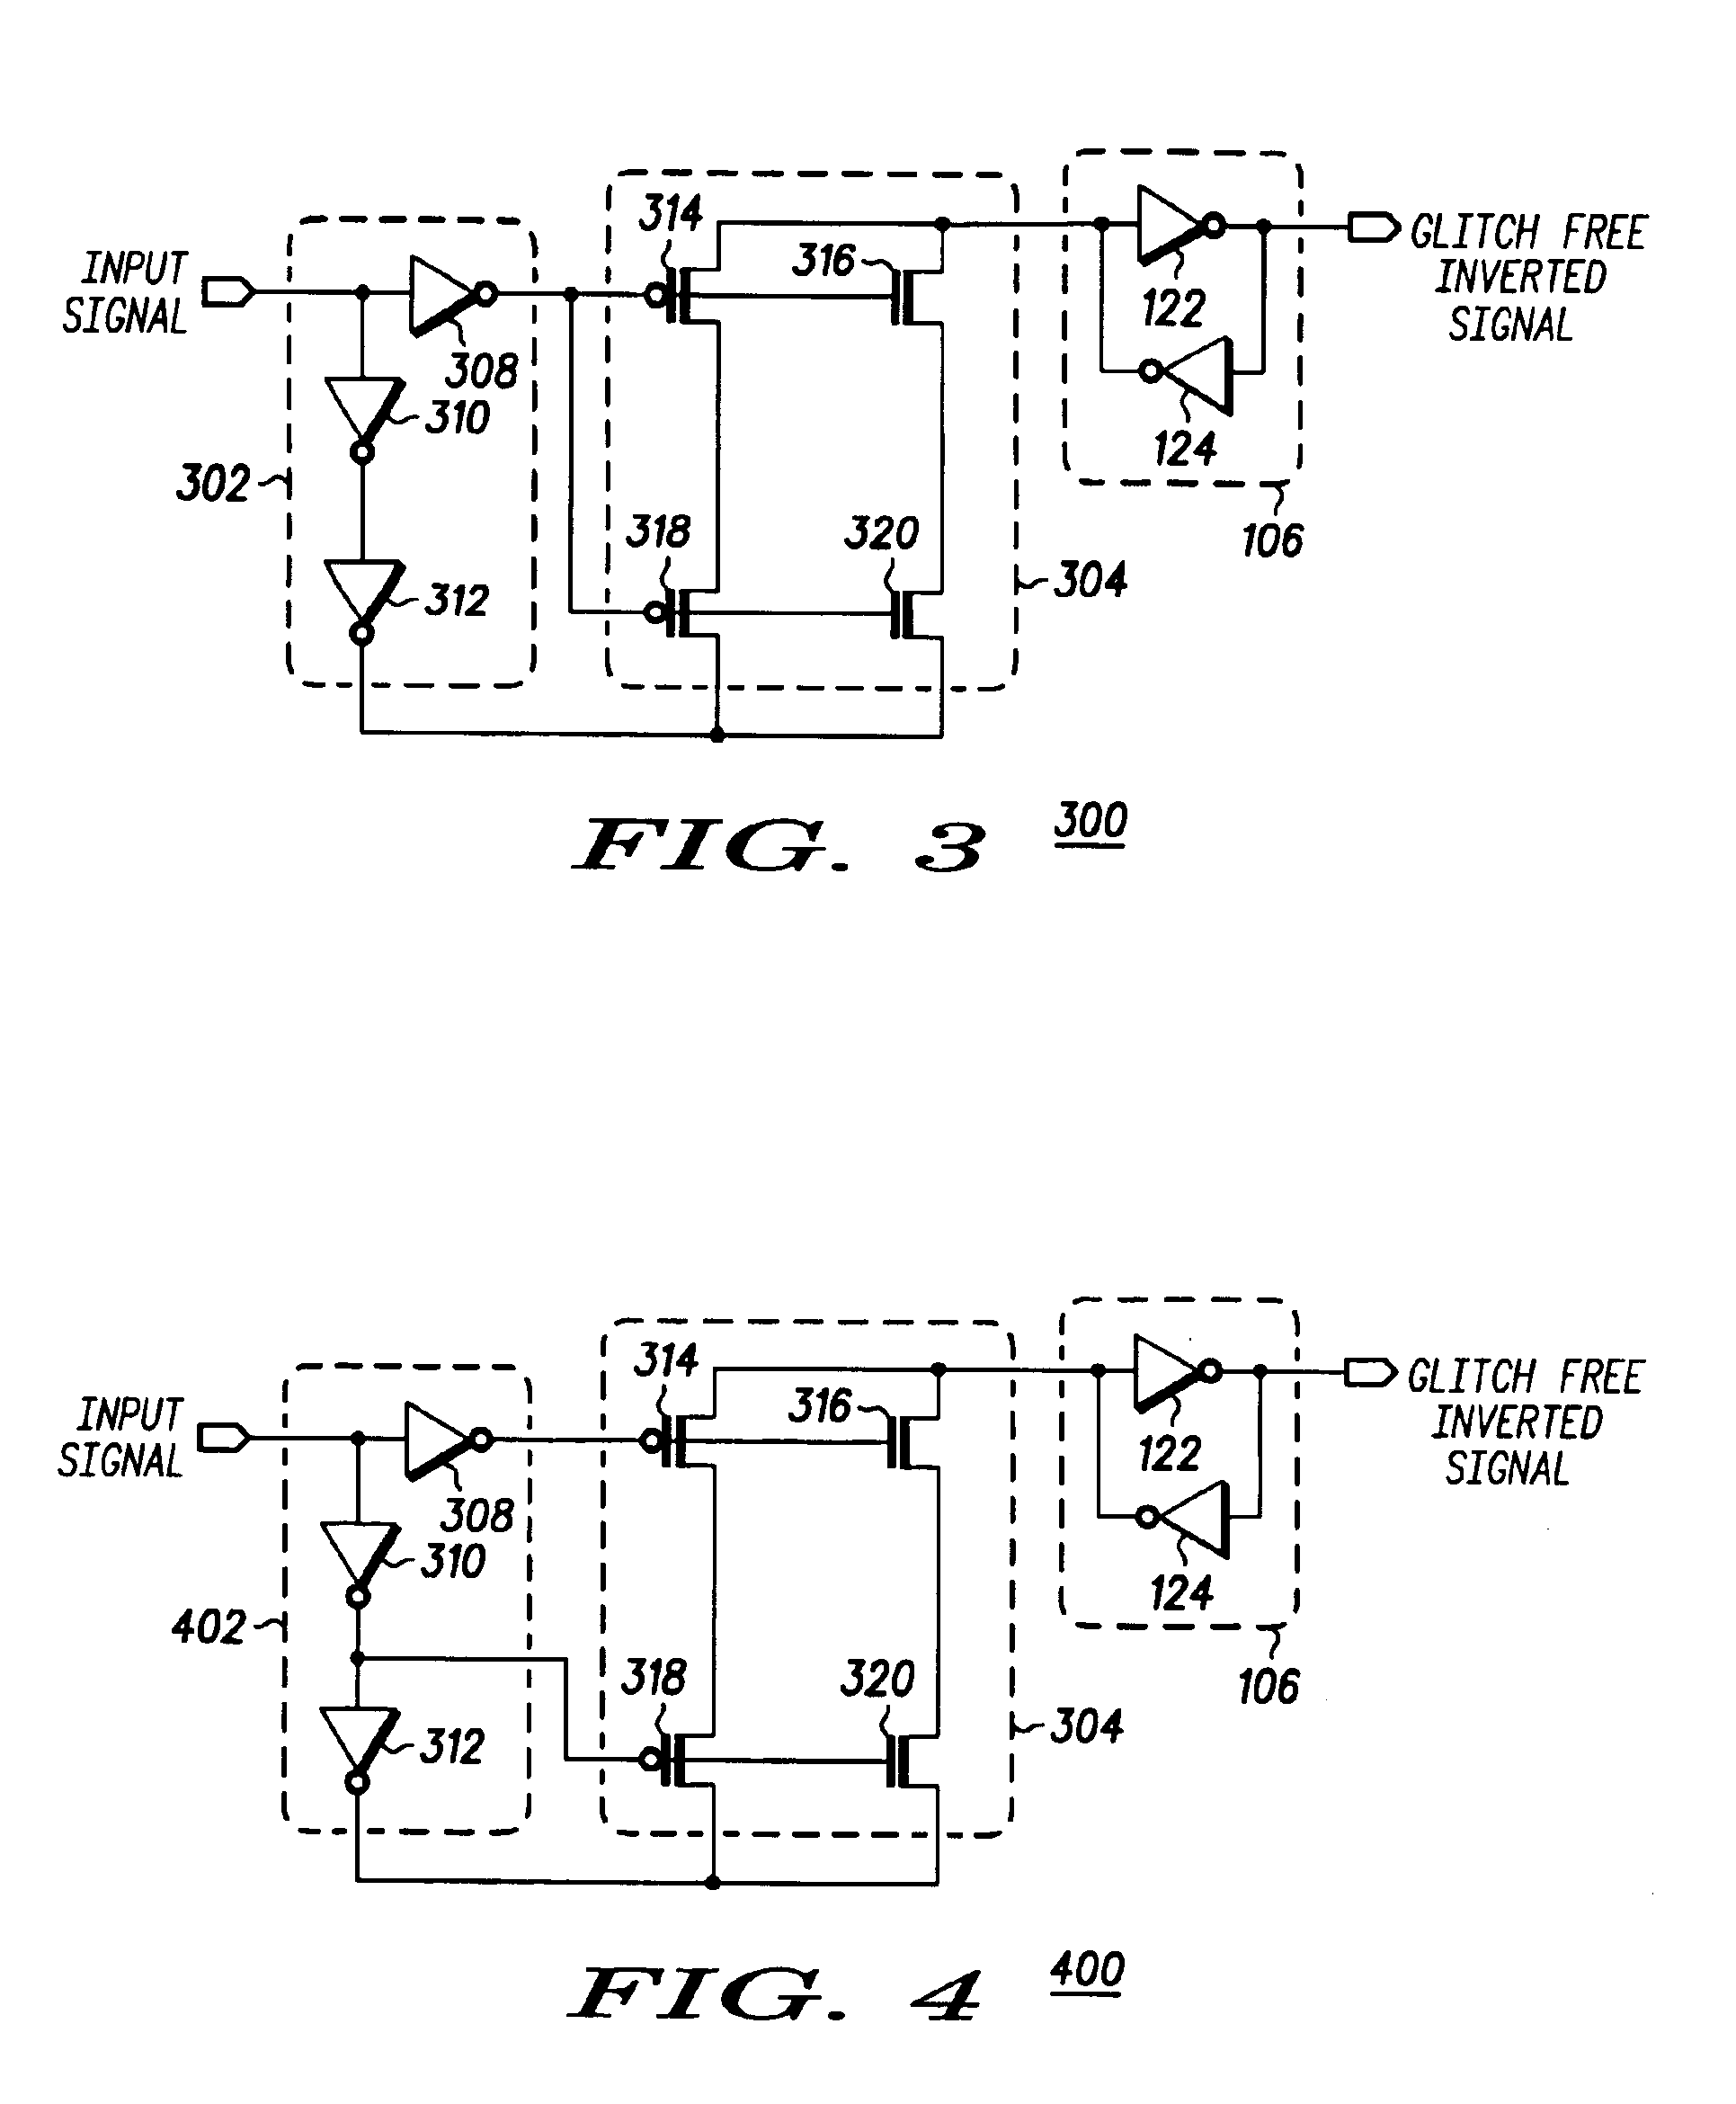 Glitch removal circuit